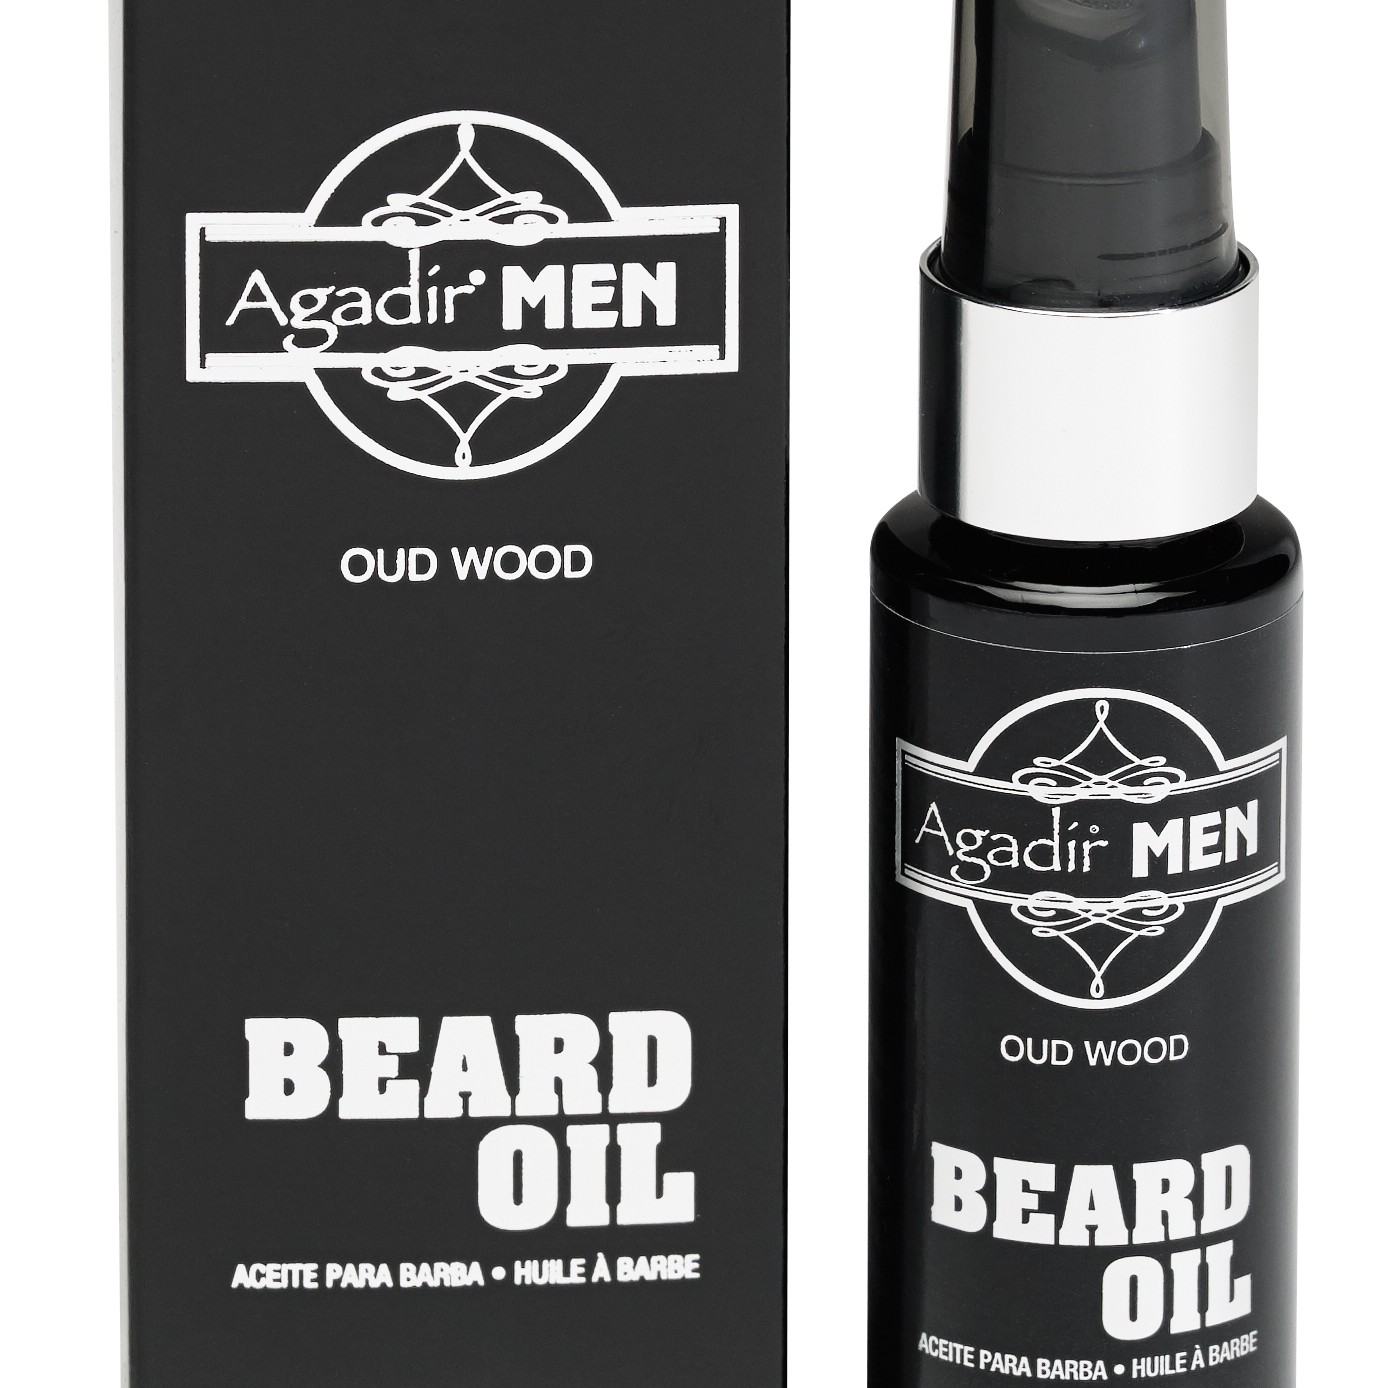 Agadir Beard Oil